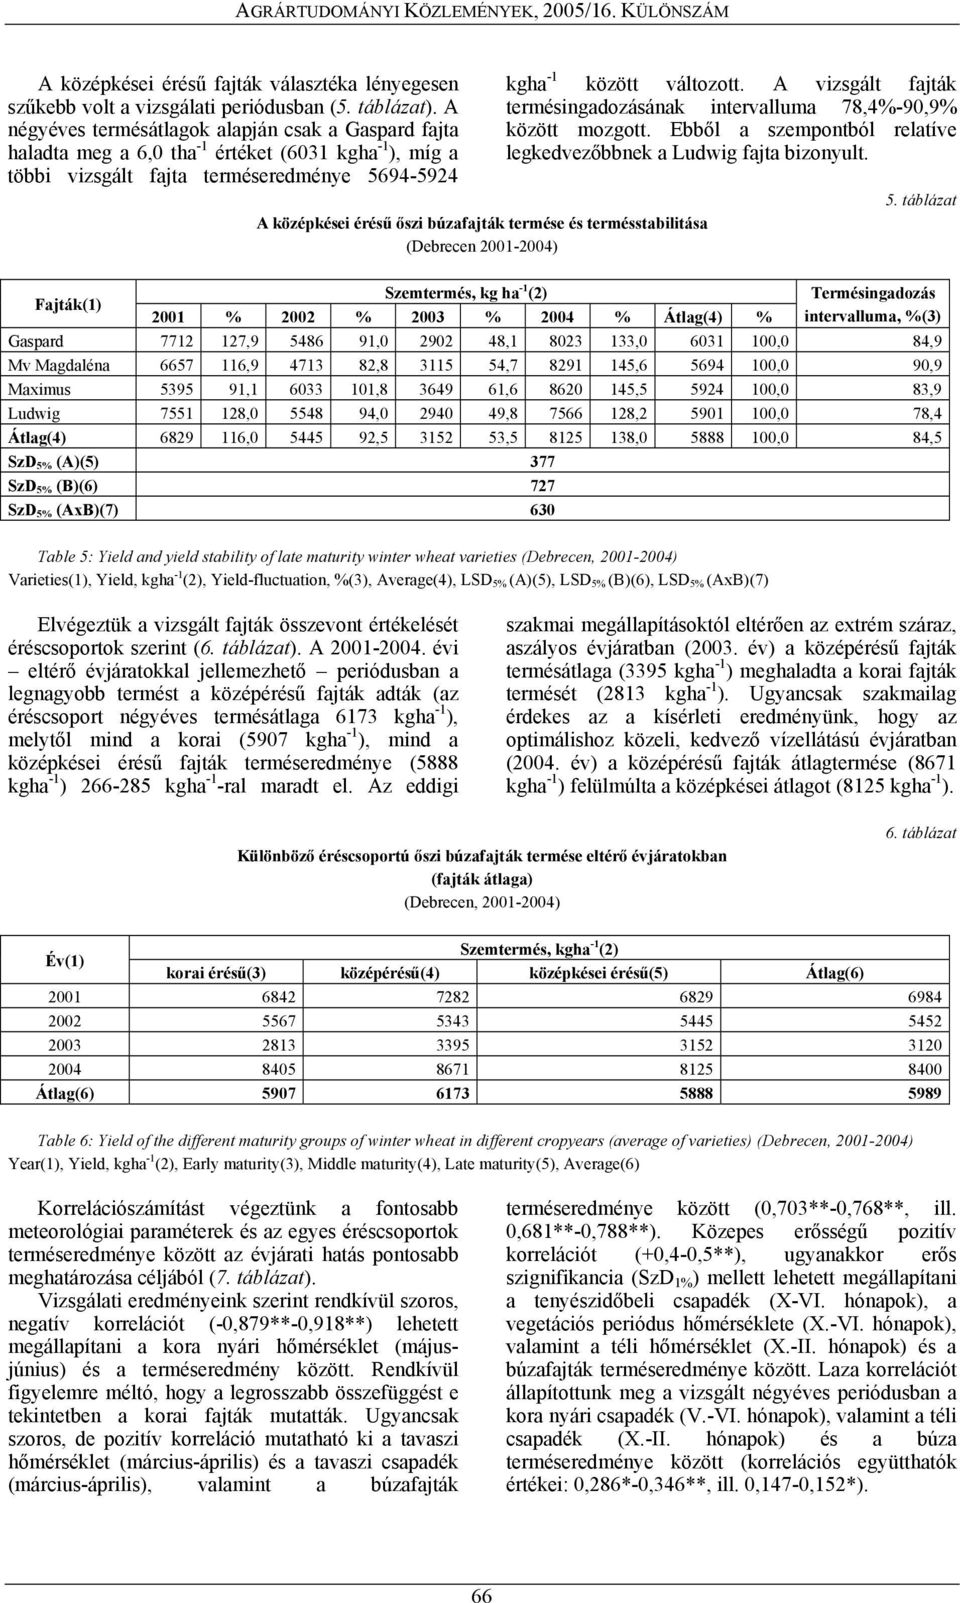 búzafajták termése és termésstabilitása (Debrecen 2001-2004) kgha -1 között változott. A vizsgált fajták termésingadozásának intervalluma 78,4%-90,9% között mozgott.